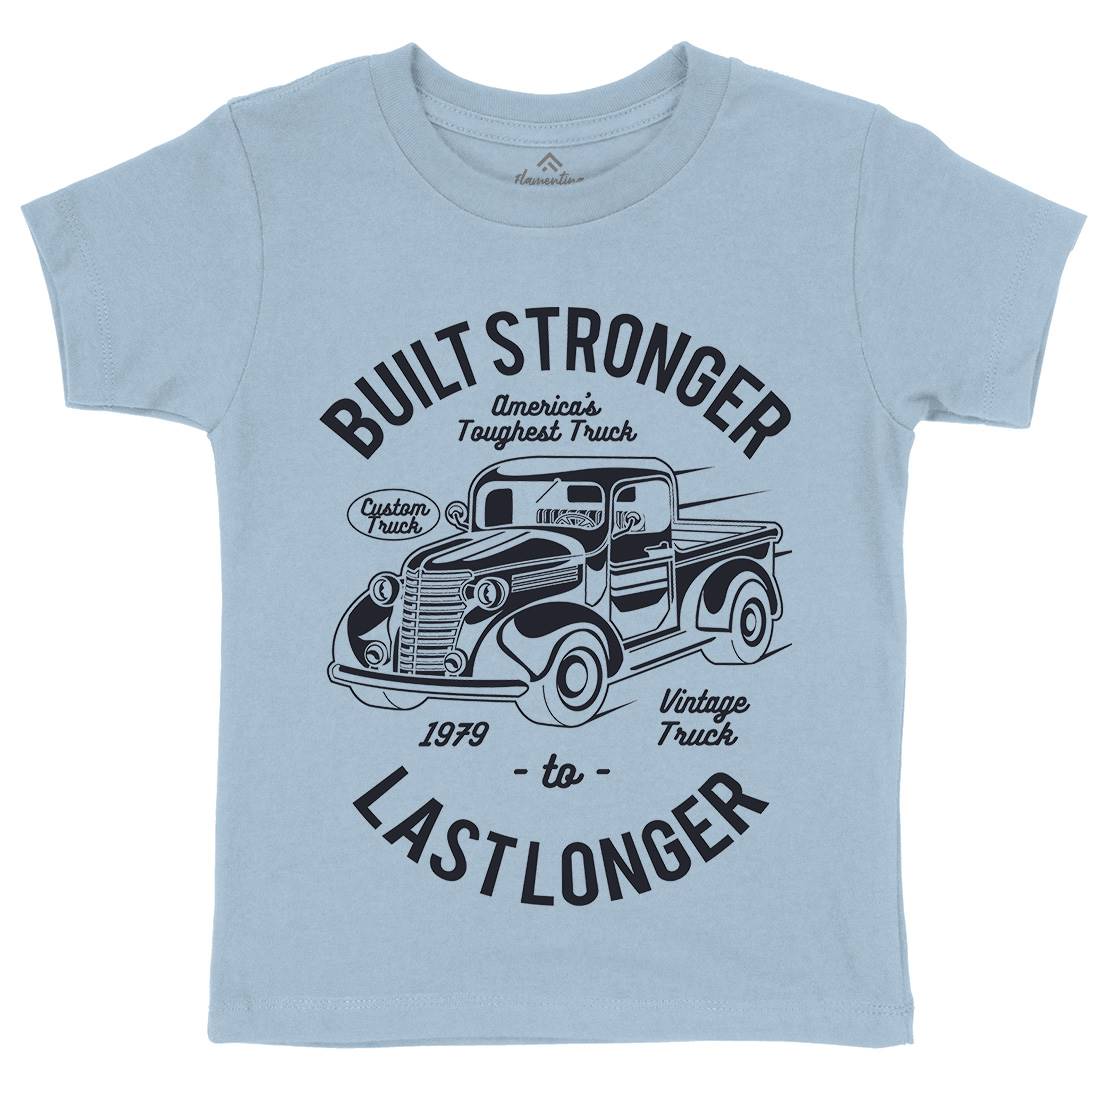 Built Stronger Kids Crew Neck T-Shirt Cars A023